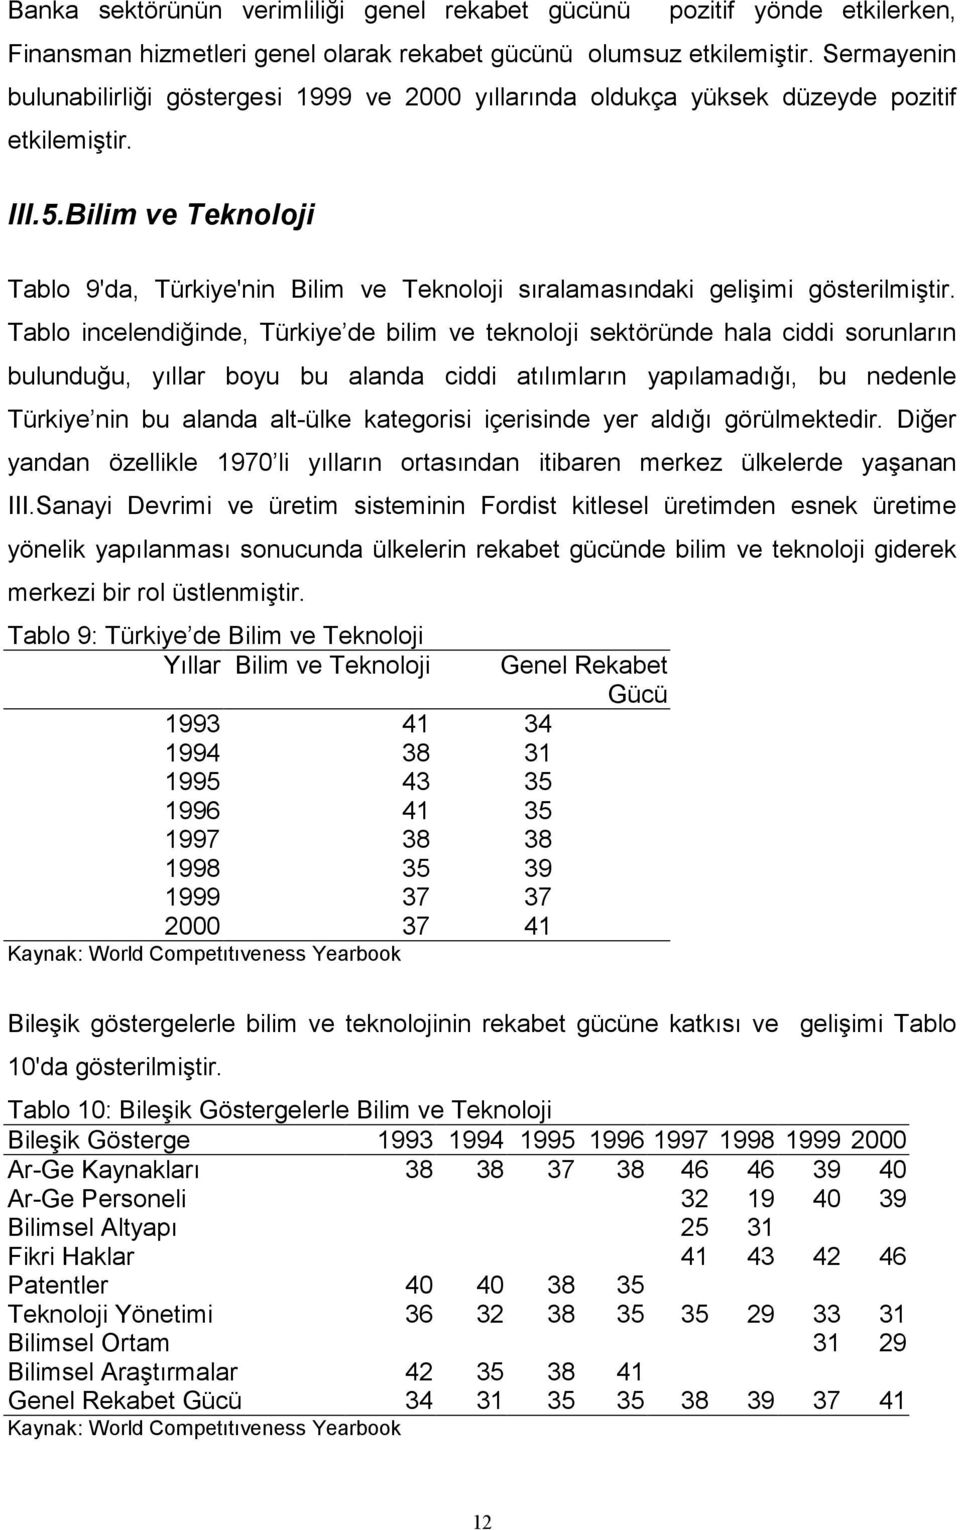 Bilim ve Teknoloji Tablo 9'da, Türkiye'nin Bilim ve Teknoloji sıralamasındaki gelişimi gösterilmiştir.